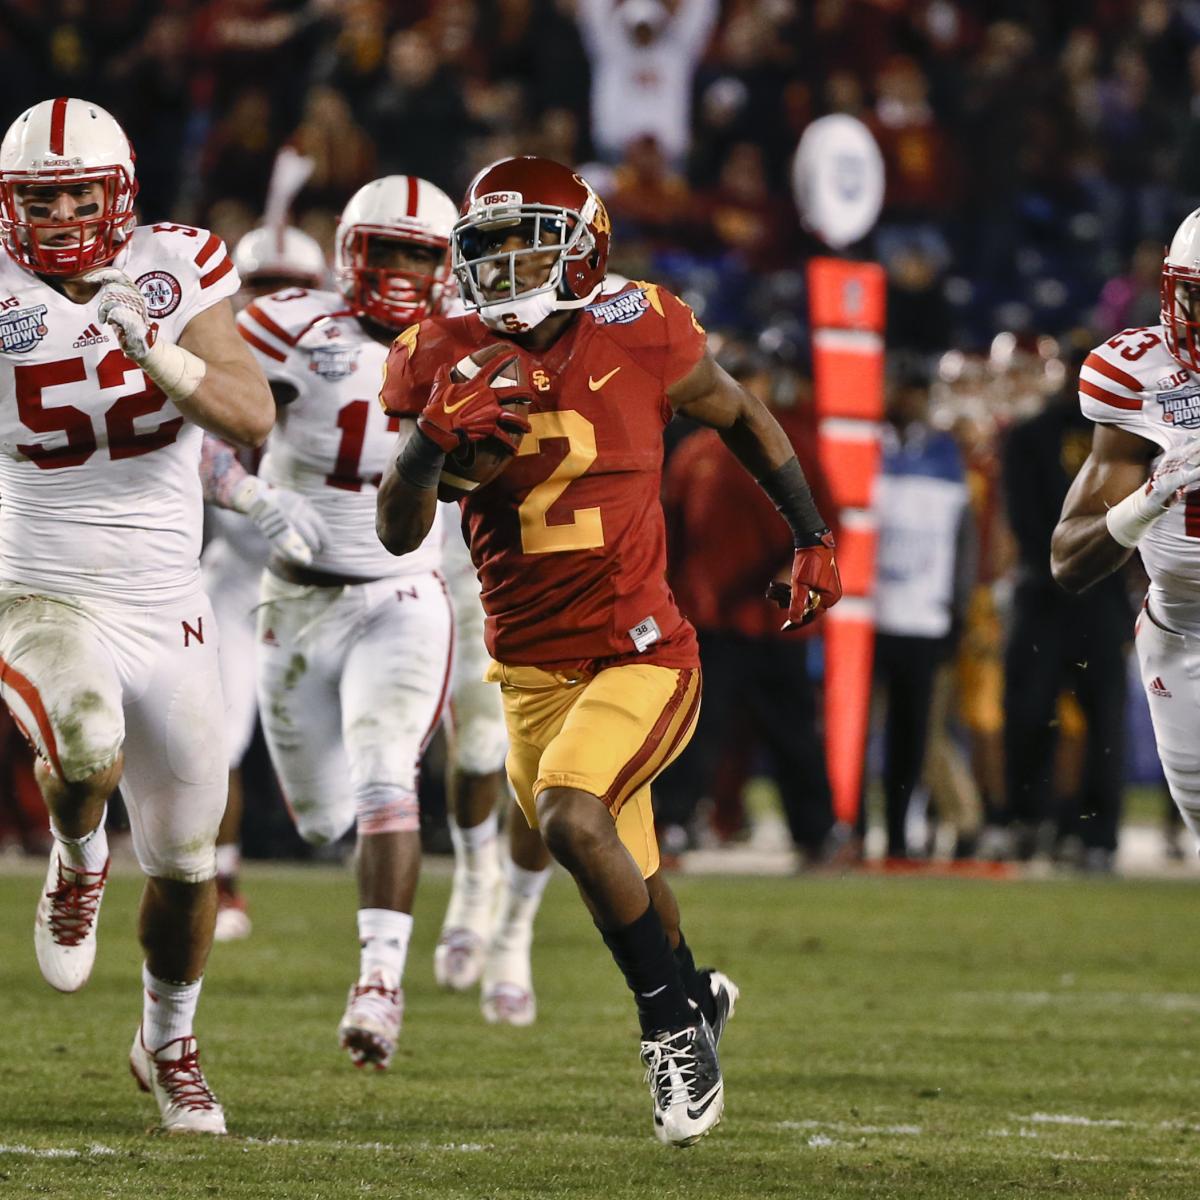 Holiday Bowl 2014: Game Grades, Analysis for Nebraska vs. USC | Bleacher Report | Latest News ...